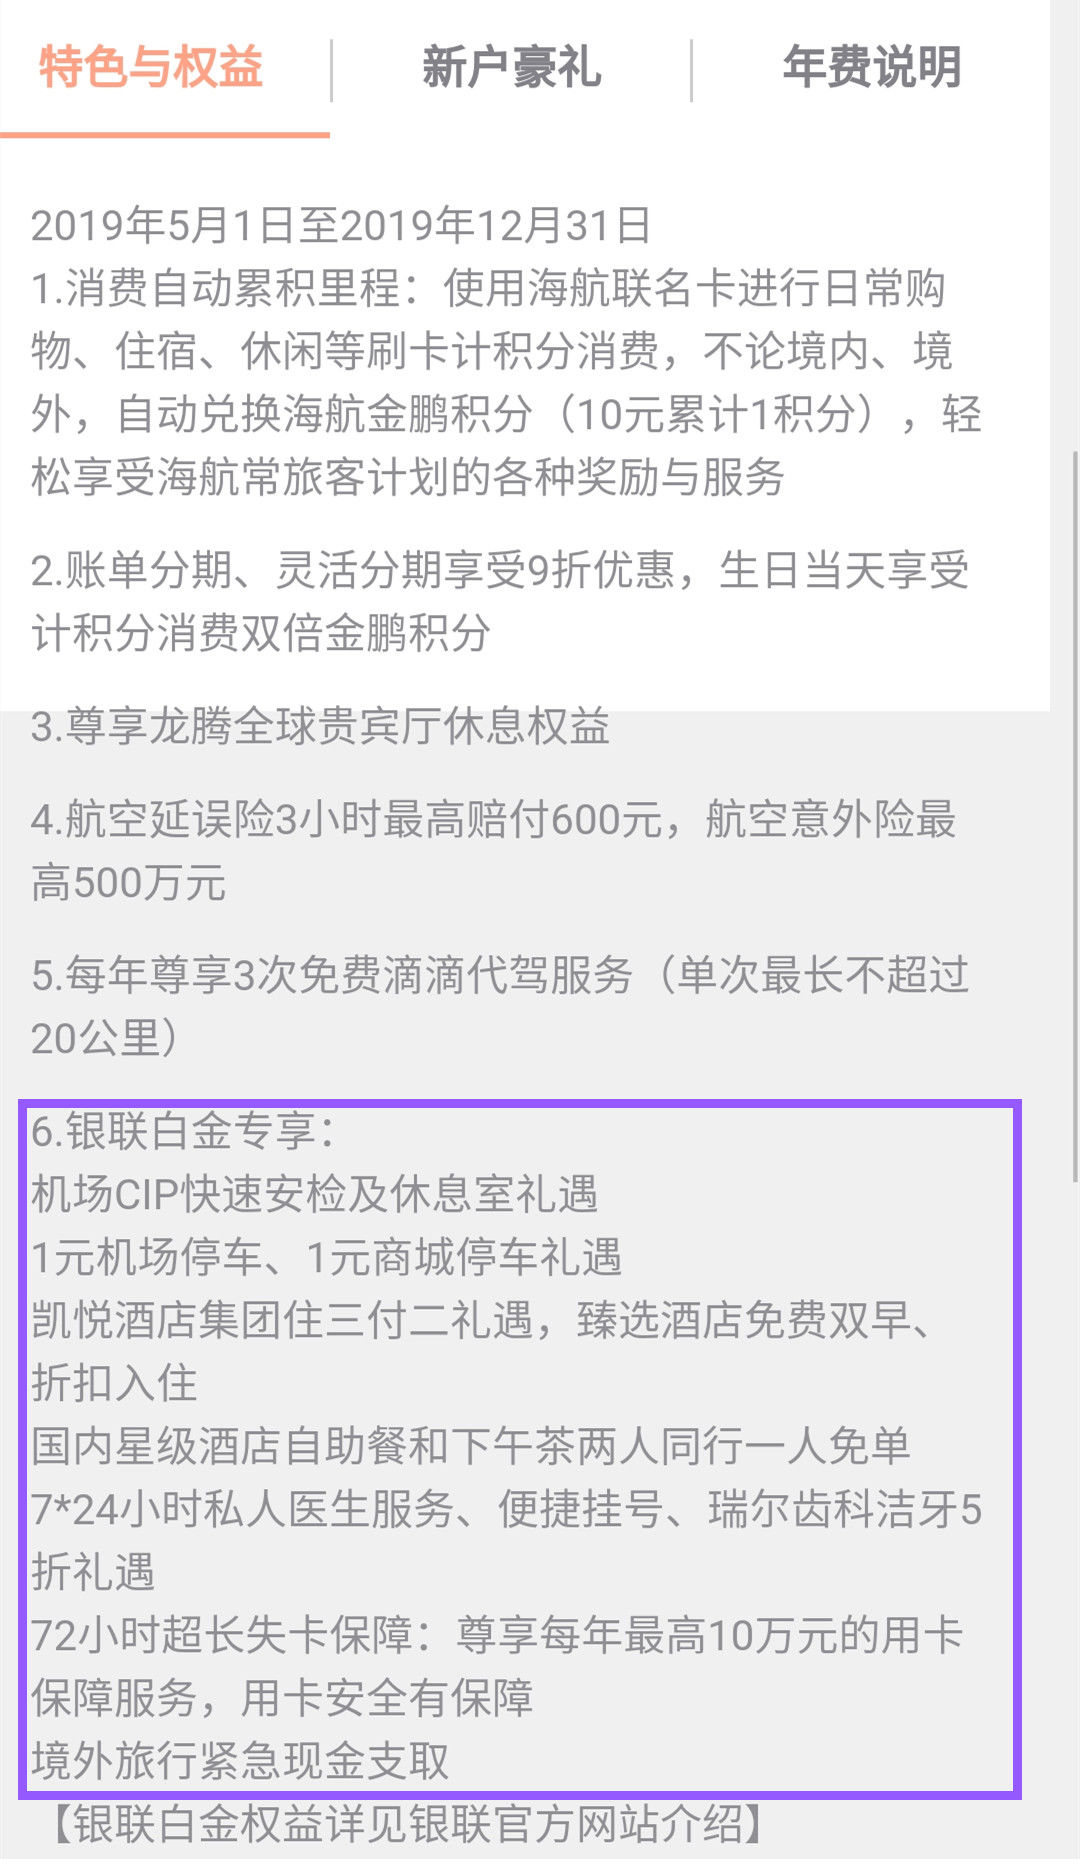 盛京银行海航联名信用卡10:1兑换里程